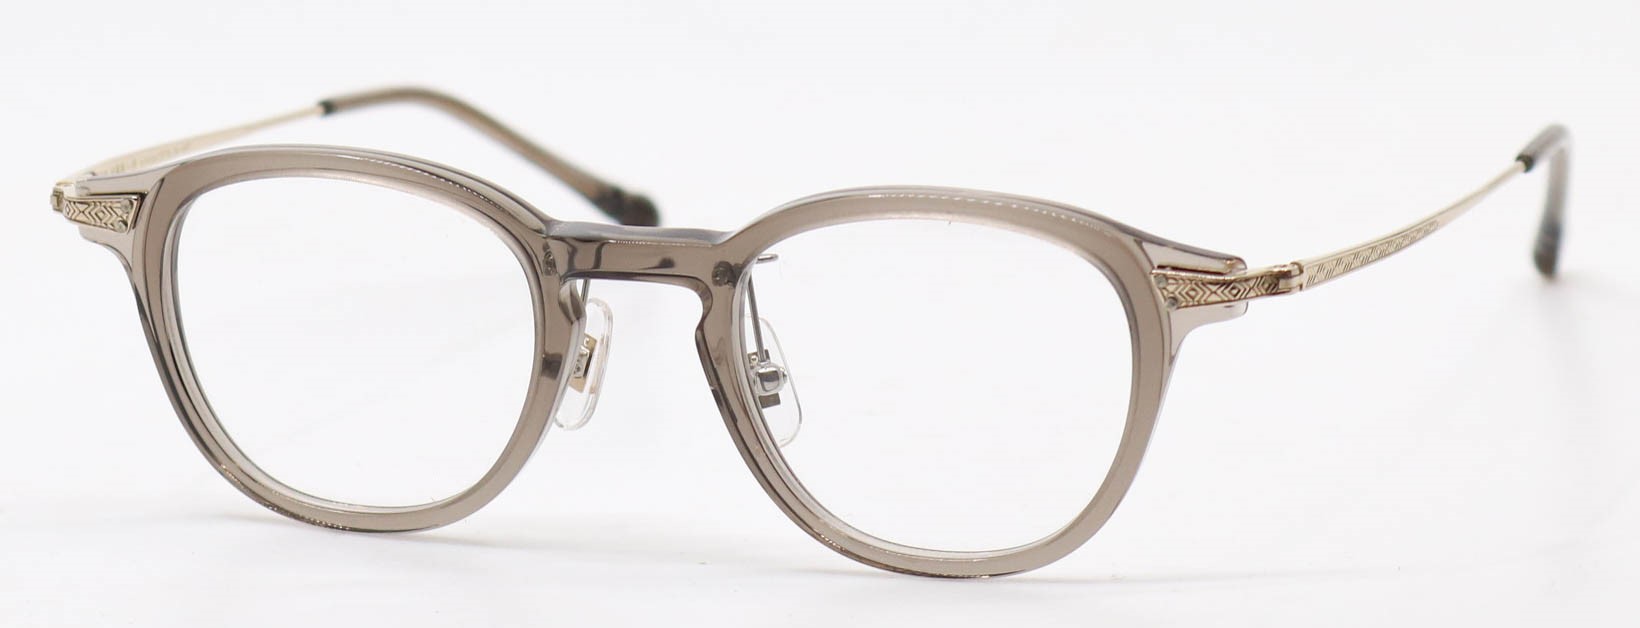 眼鏡のカラータイプC-4 Gray/Gold